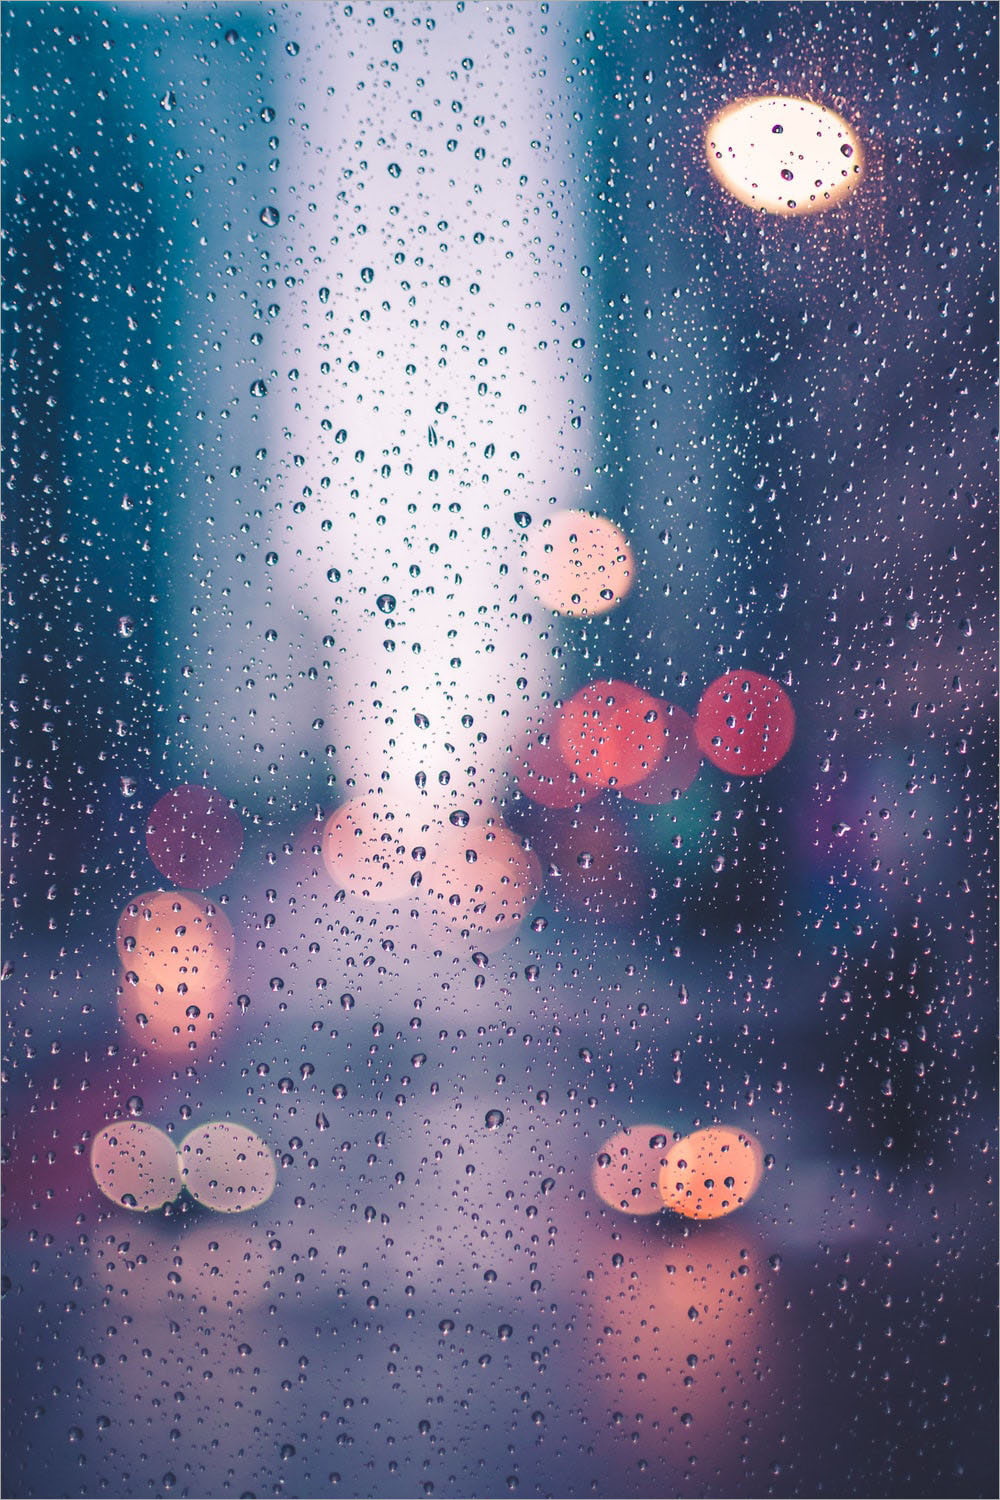 Hình ảnh mưa đẹp buồn lãng mạn nhất